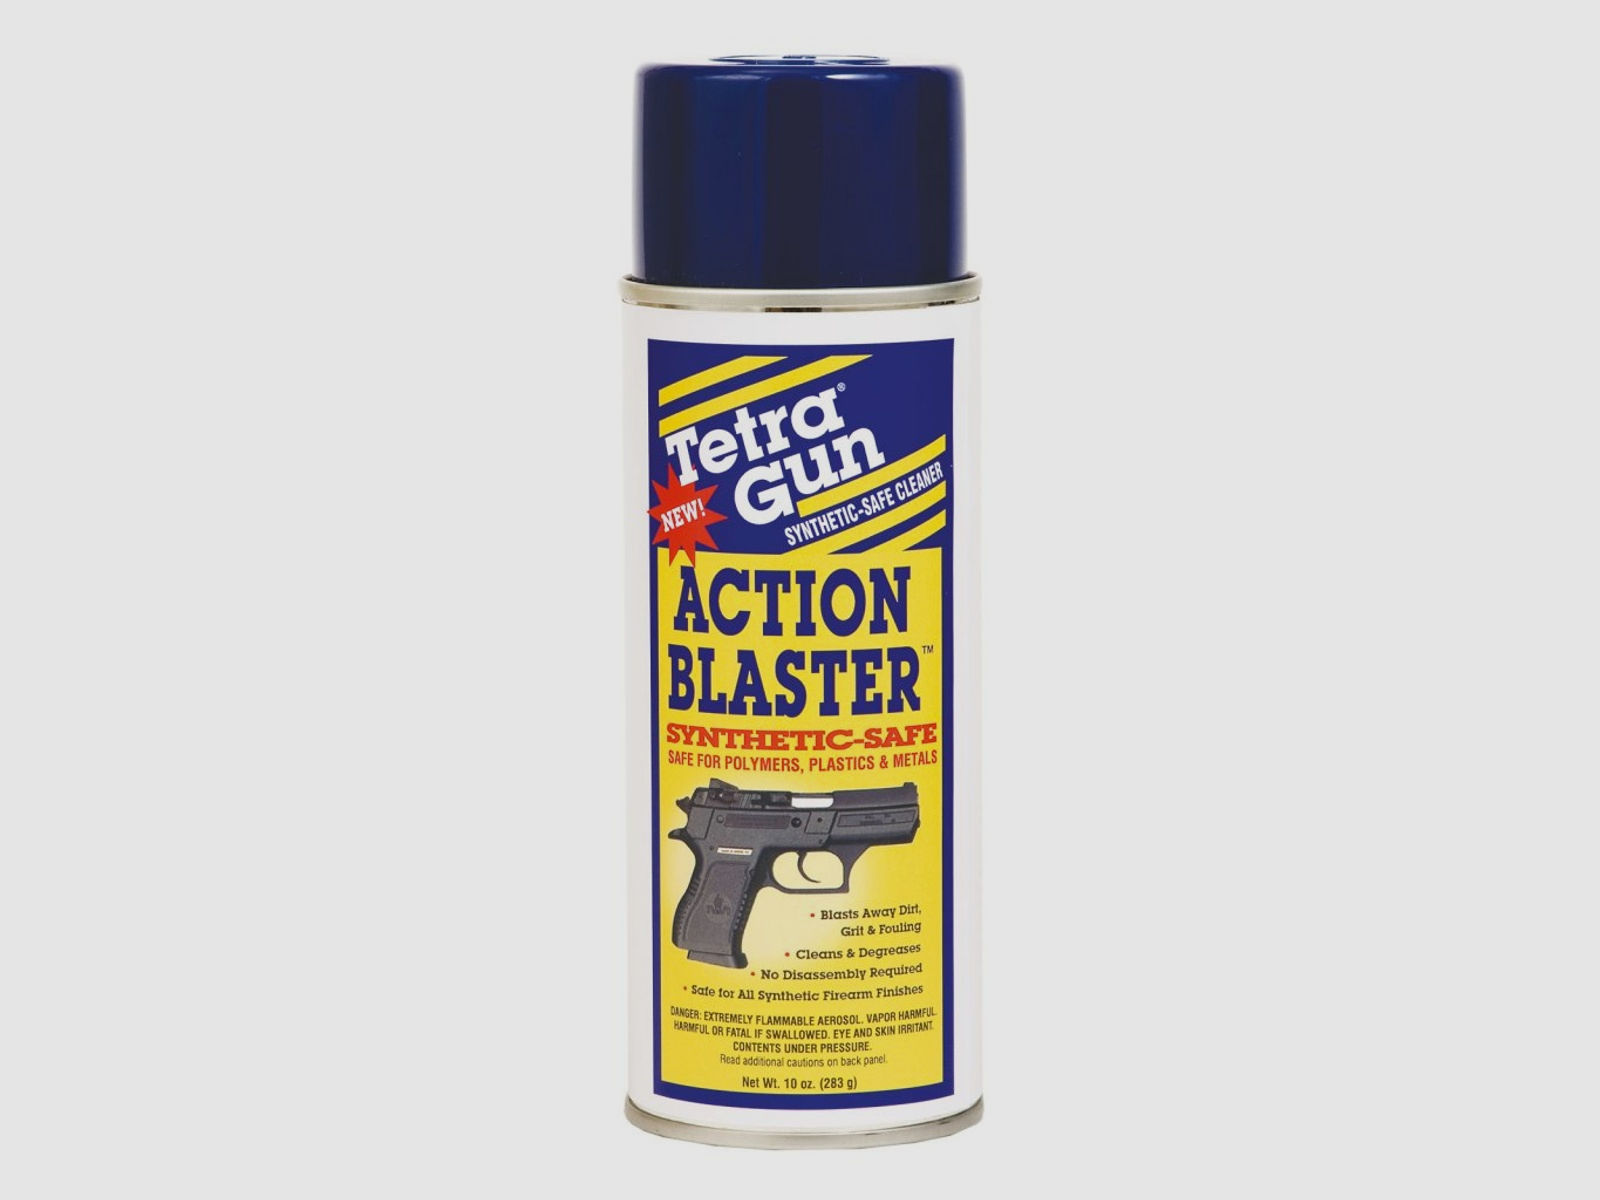 TETRA GUN Synthetic-Safe Action Blaster